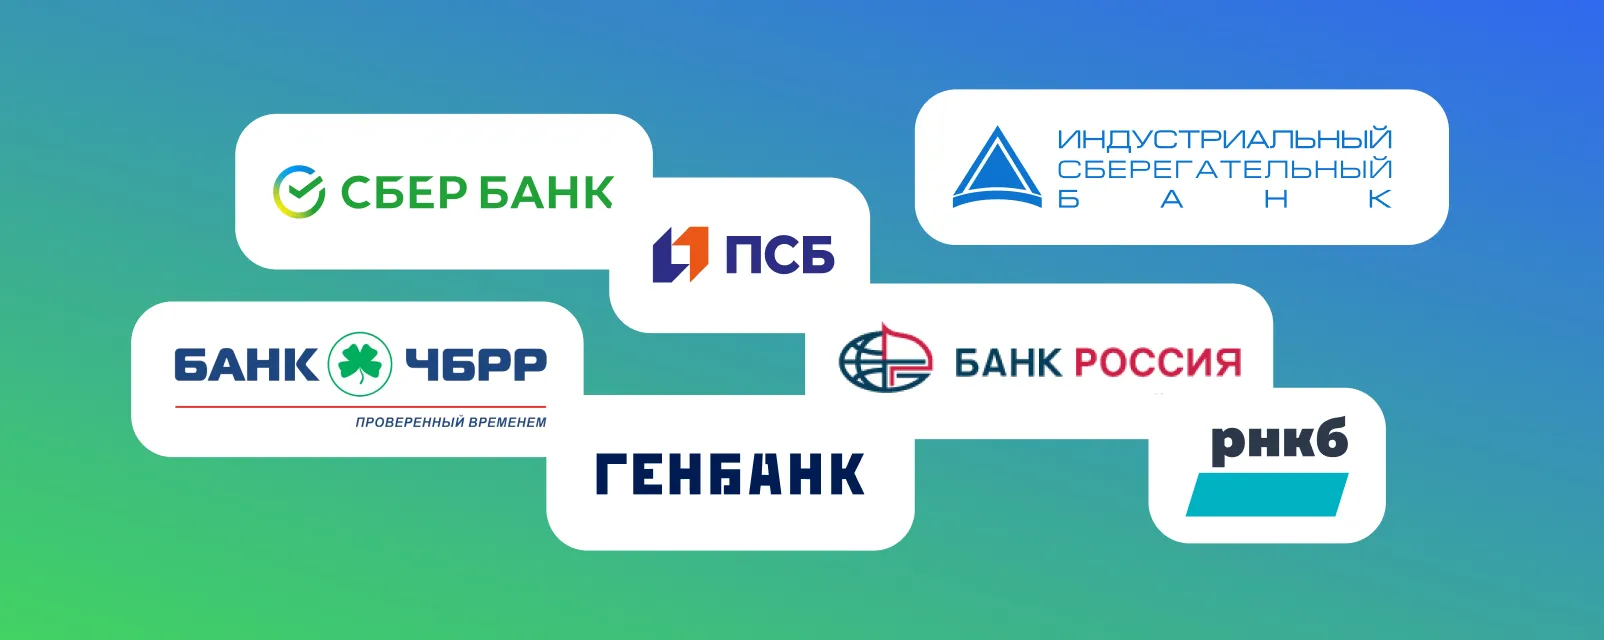 Сбербанк начинает работать в Крыму, установил первые банкоматы